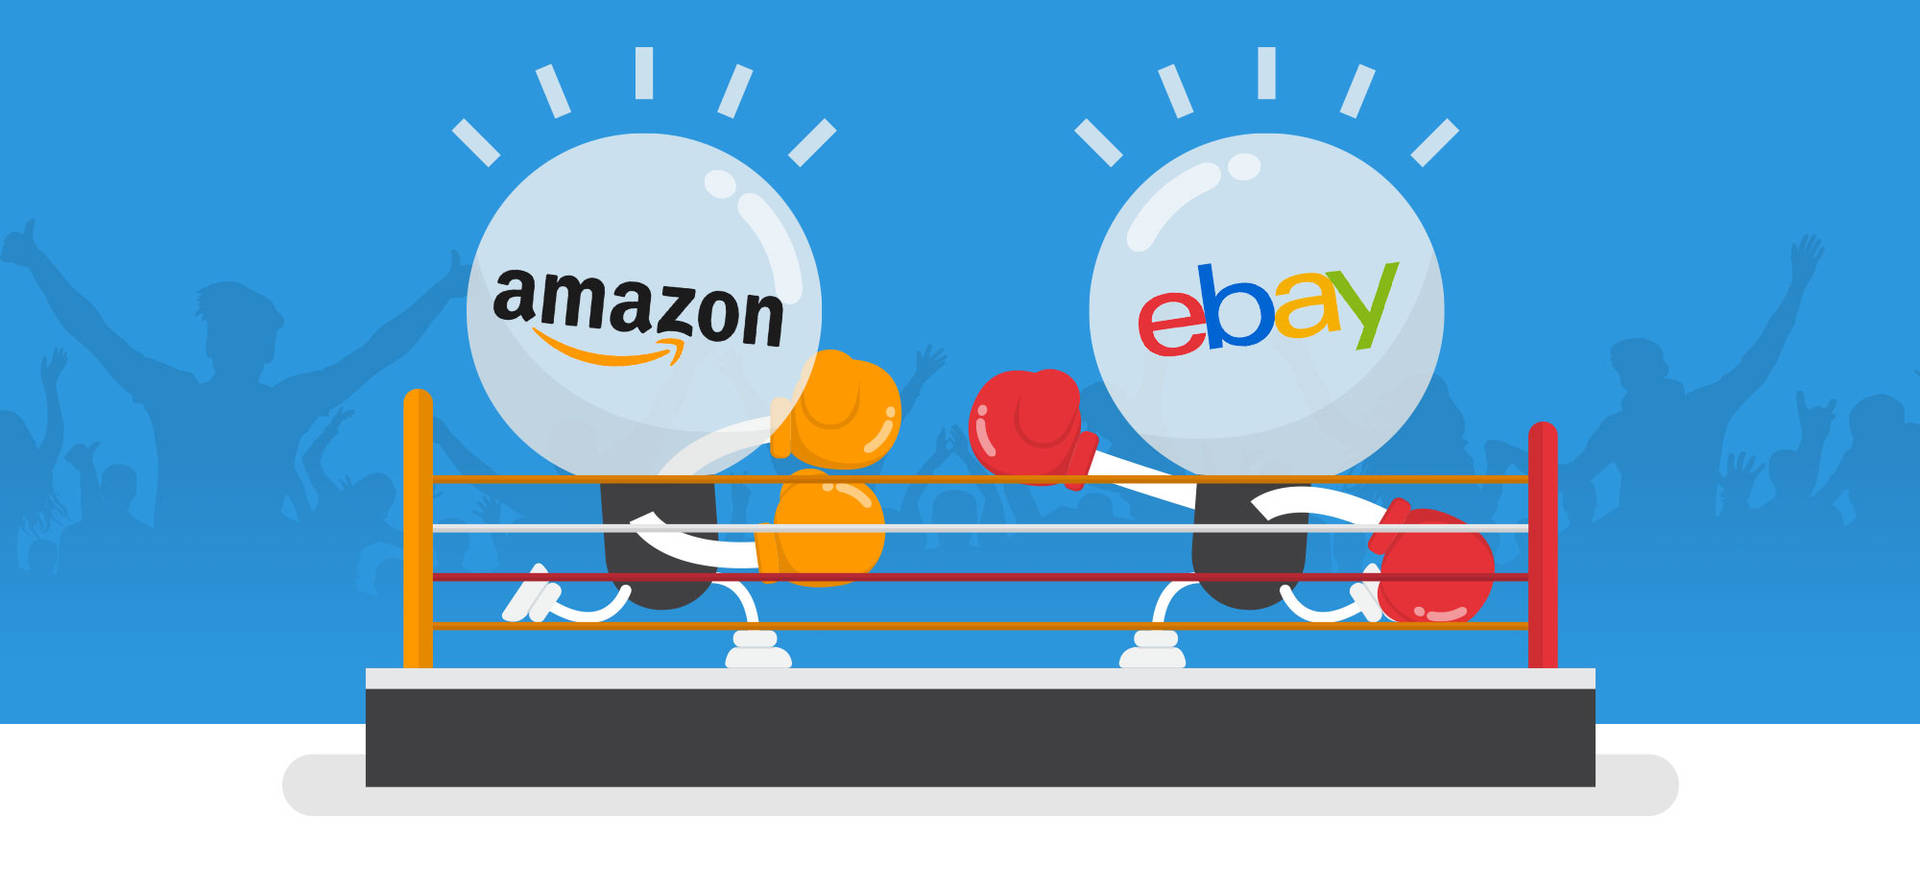 Amazon Vs Ebay Background